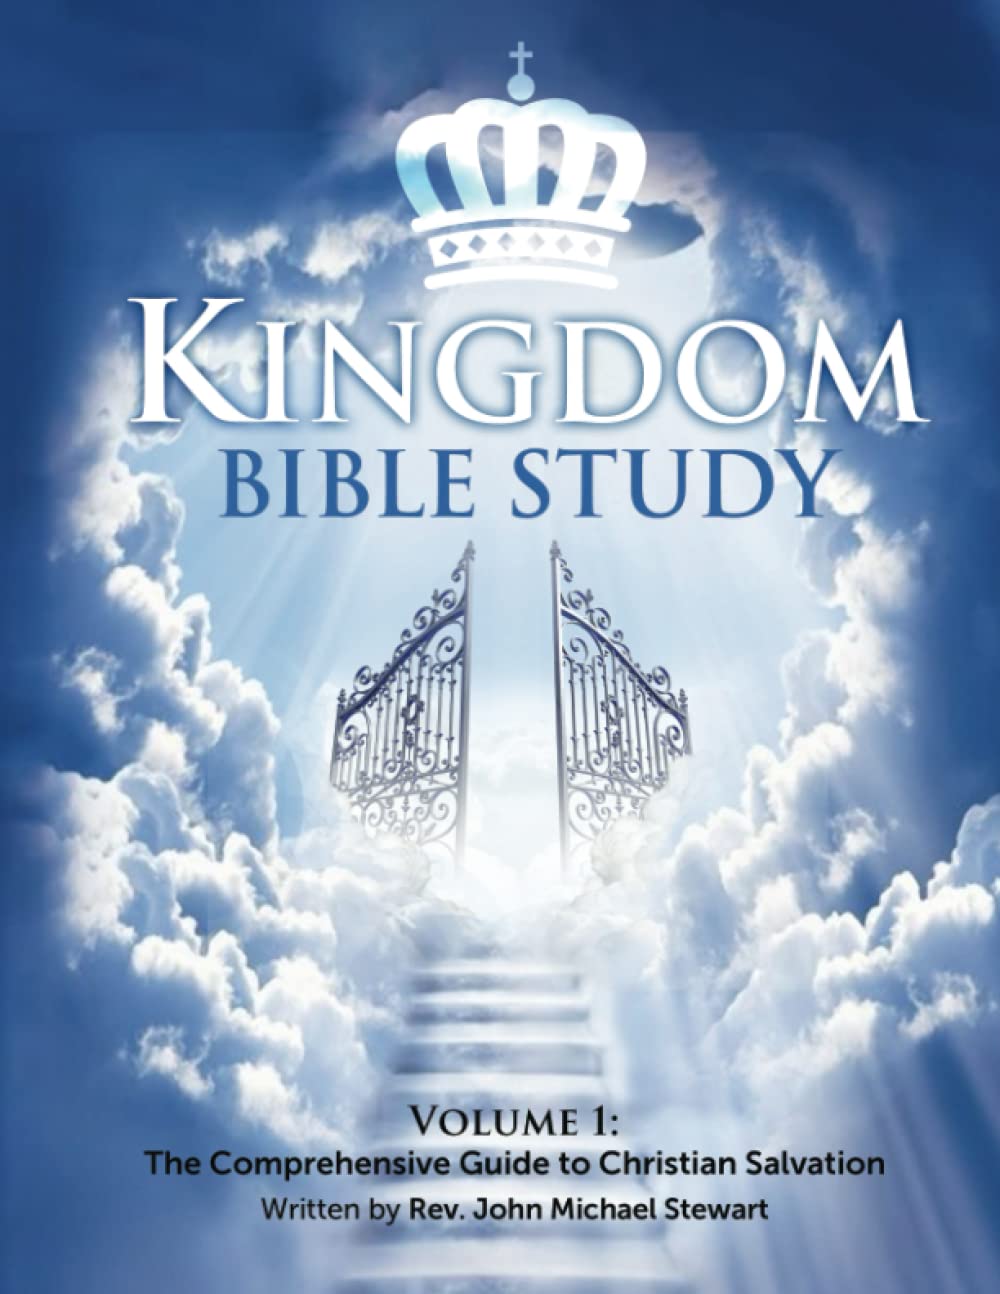 Kingdom Bible Study by Rev John Michael Stewart